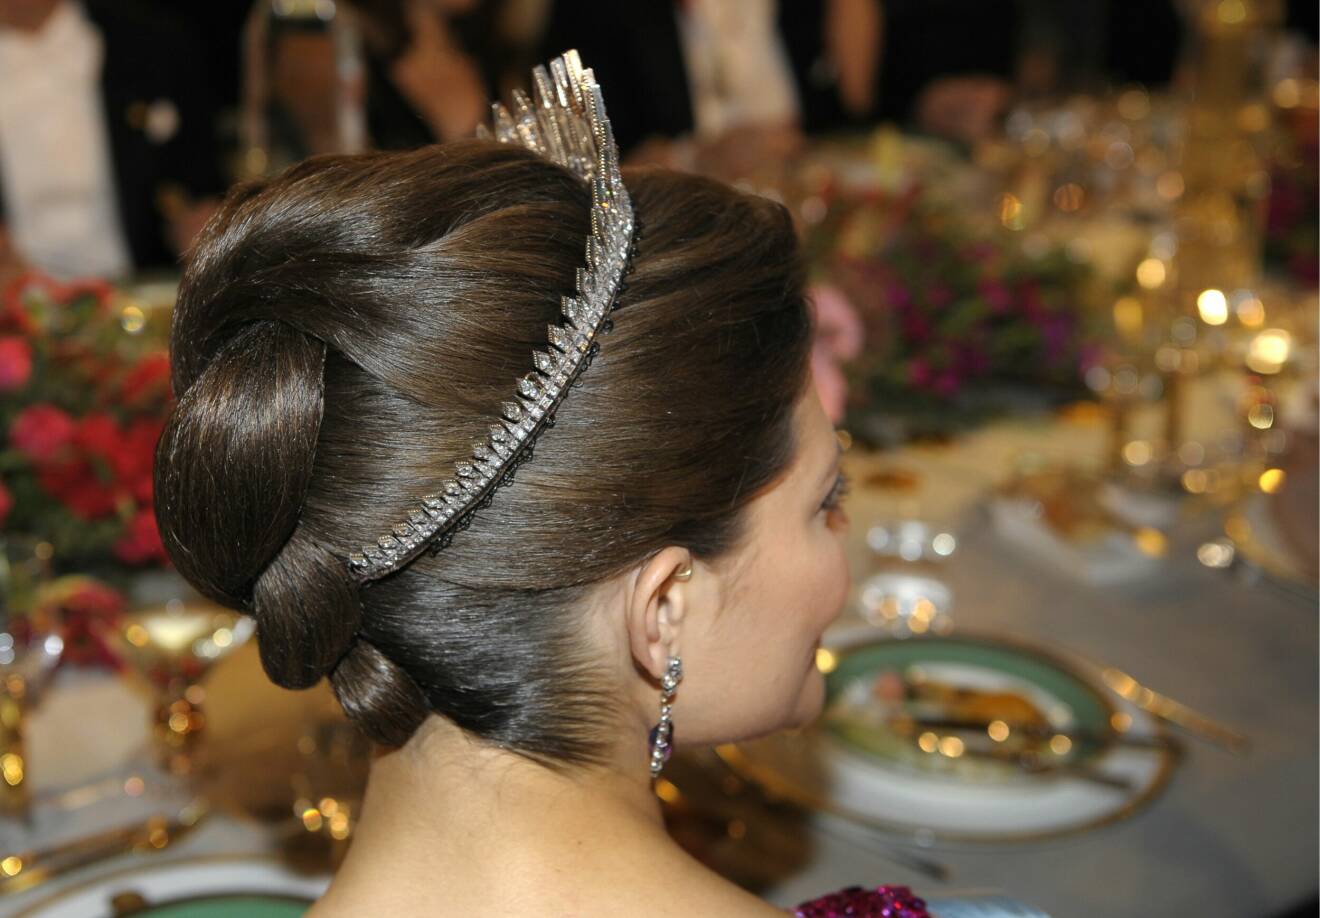 2008 såg Victorias frisyr såhär vacker ut under Nobelfesten